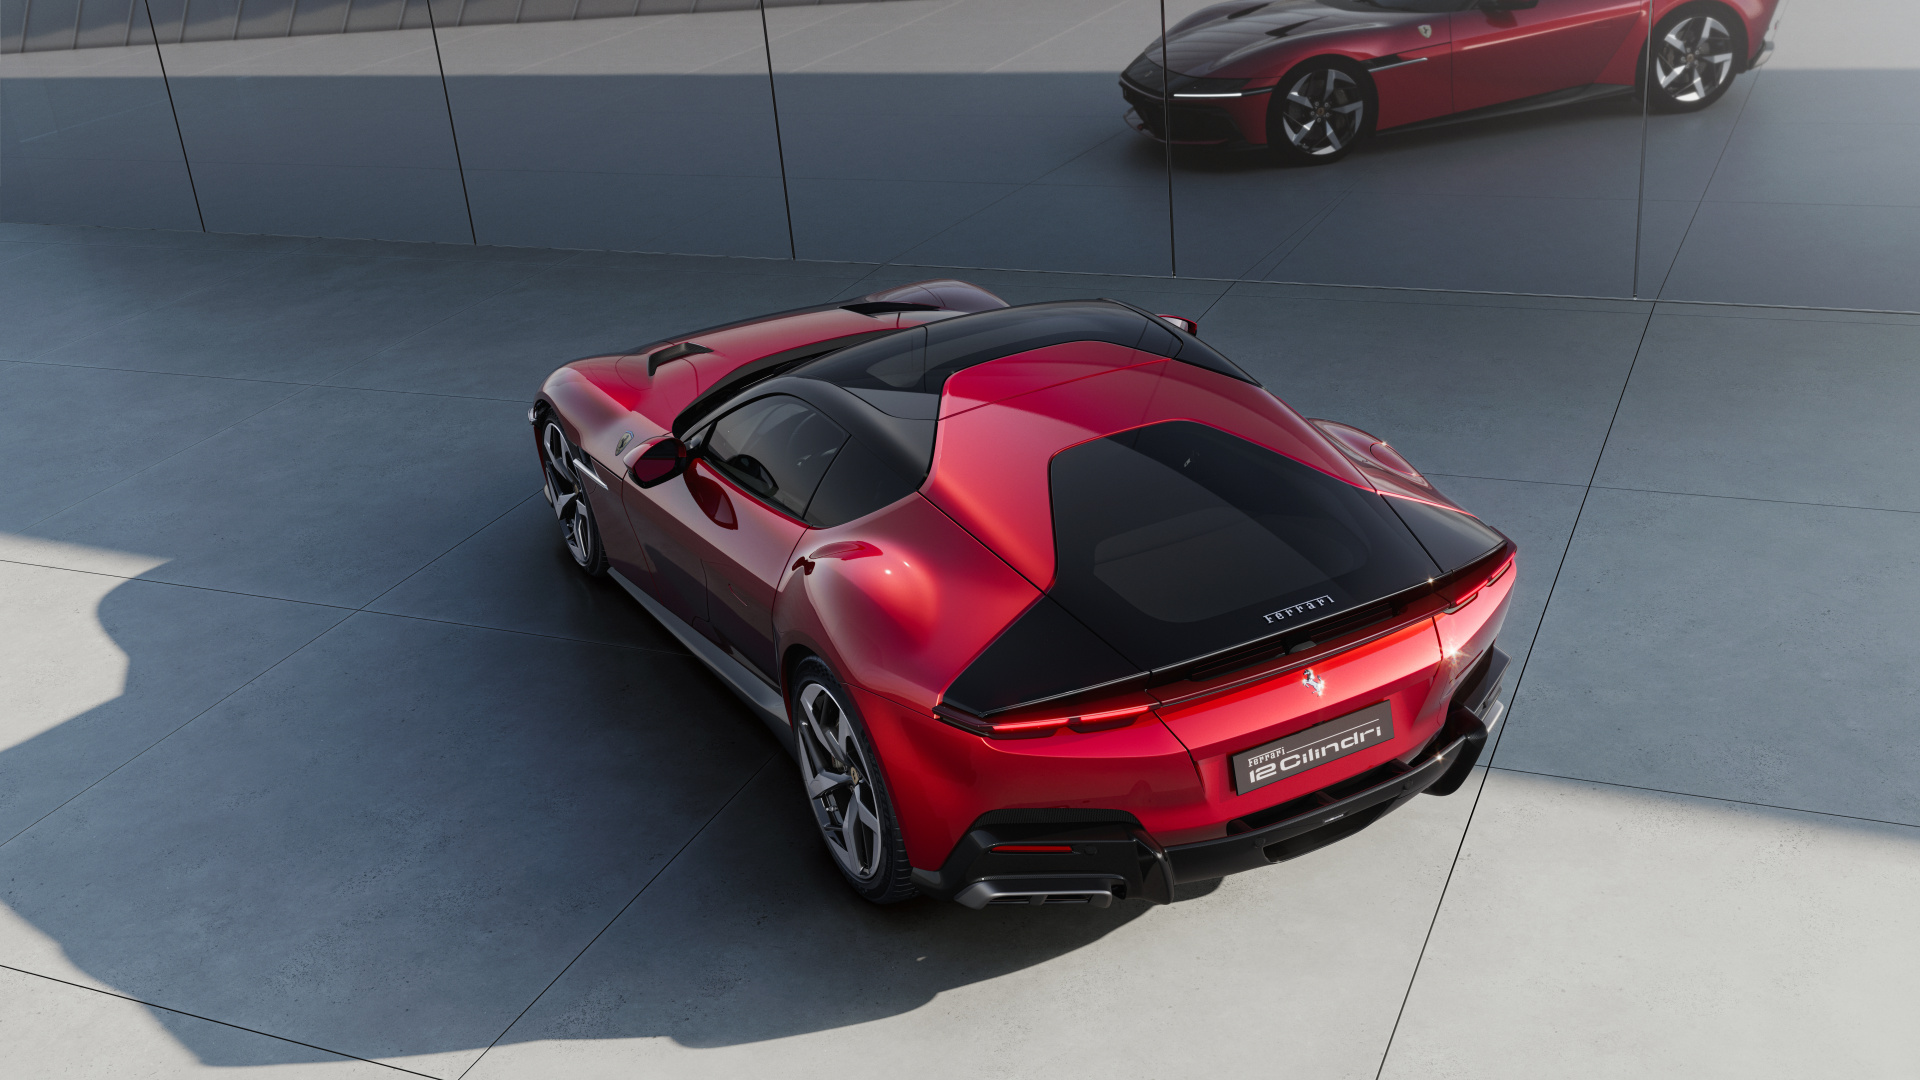 SMALL_New_Ferrari_V12_ext_07_Design_red_media_111b1b3a-d94a-416d-84e8-9140b39f1271